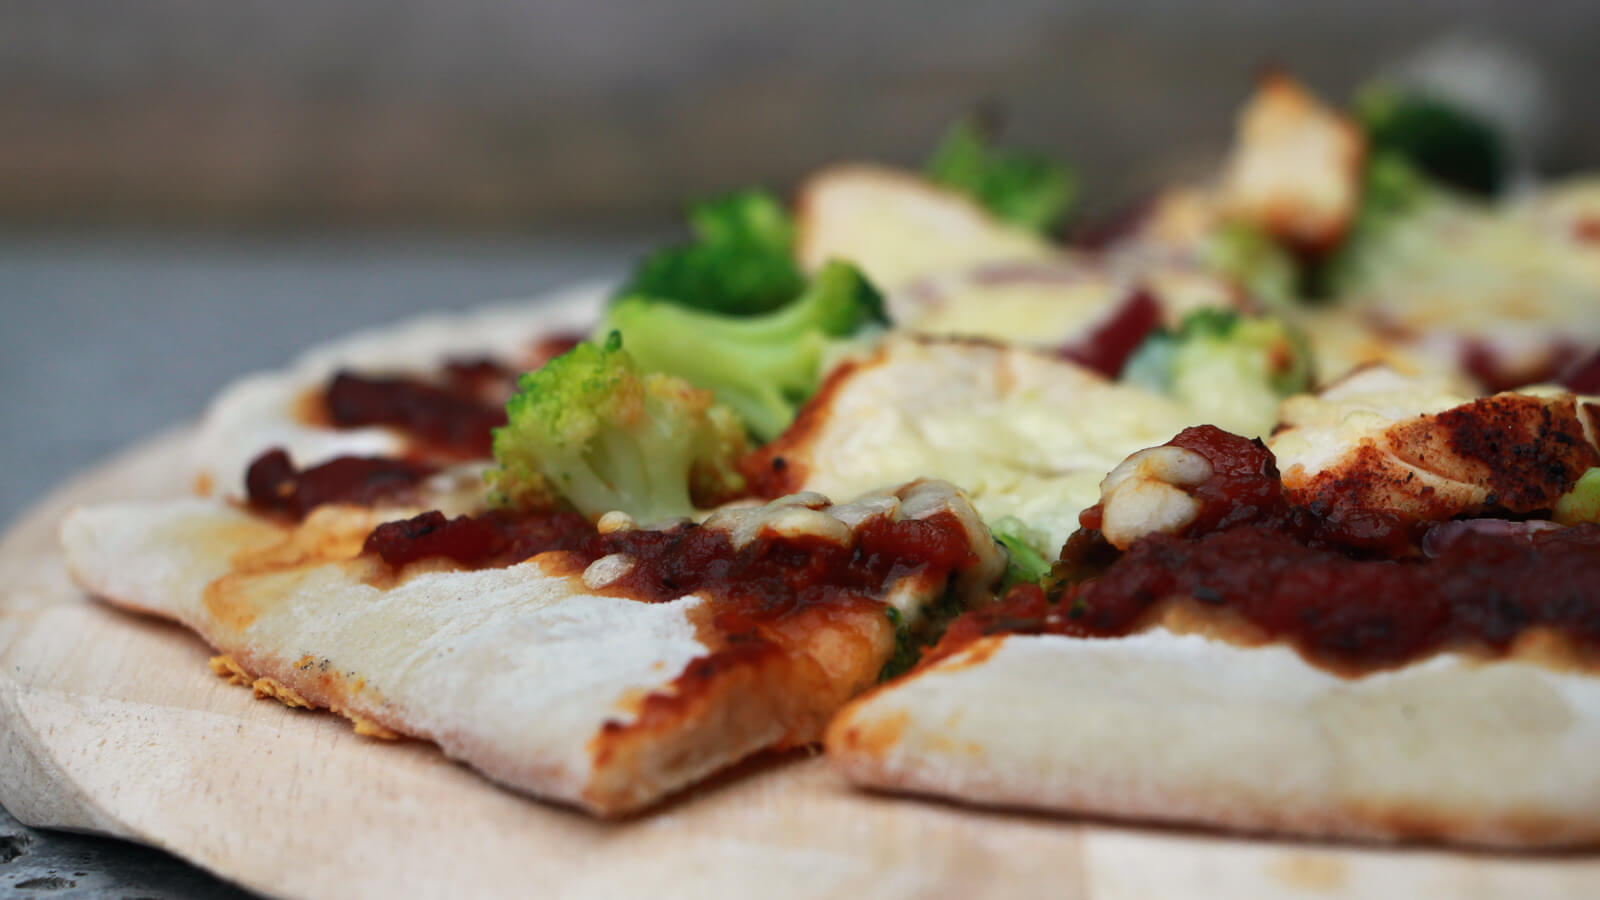 Met een pizzasteen bak je de heerlijkste pizza's zelf op de BBQ. Ga bijvoorbeeld eens voor deze Pizza's met gegrilde kip!